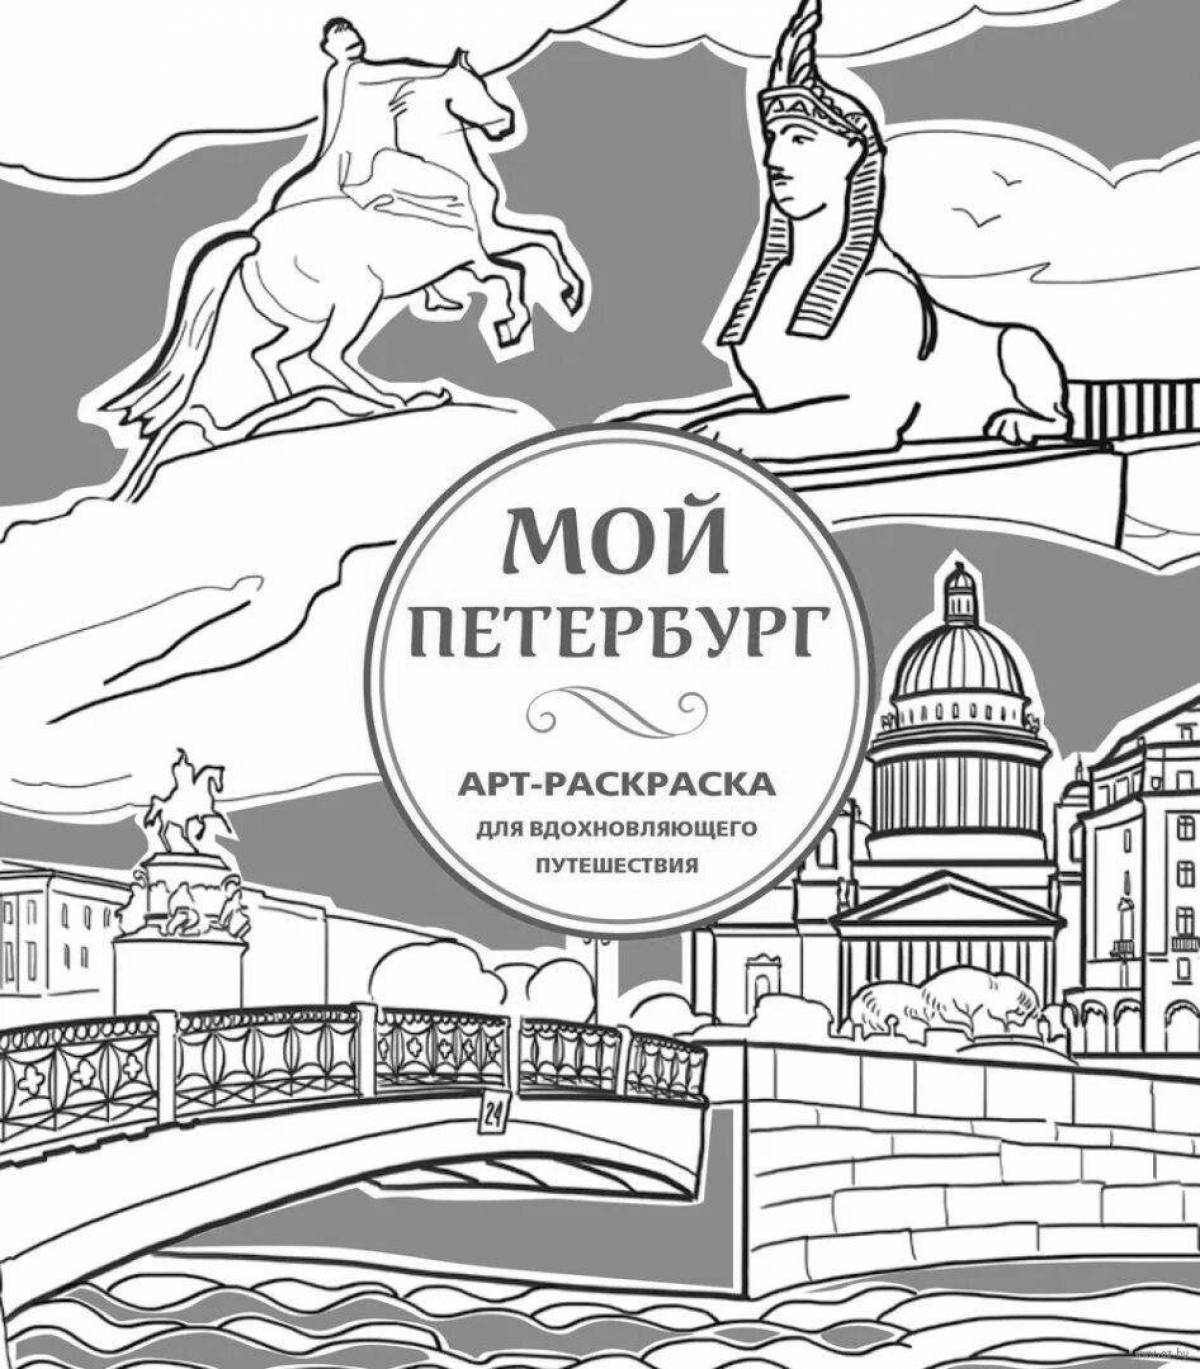 Утопическая раскраска санкт-петербурга